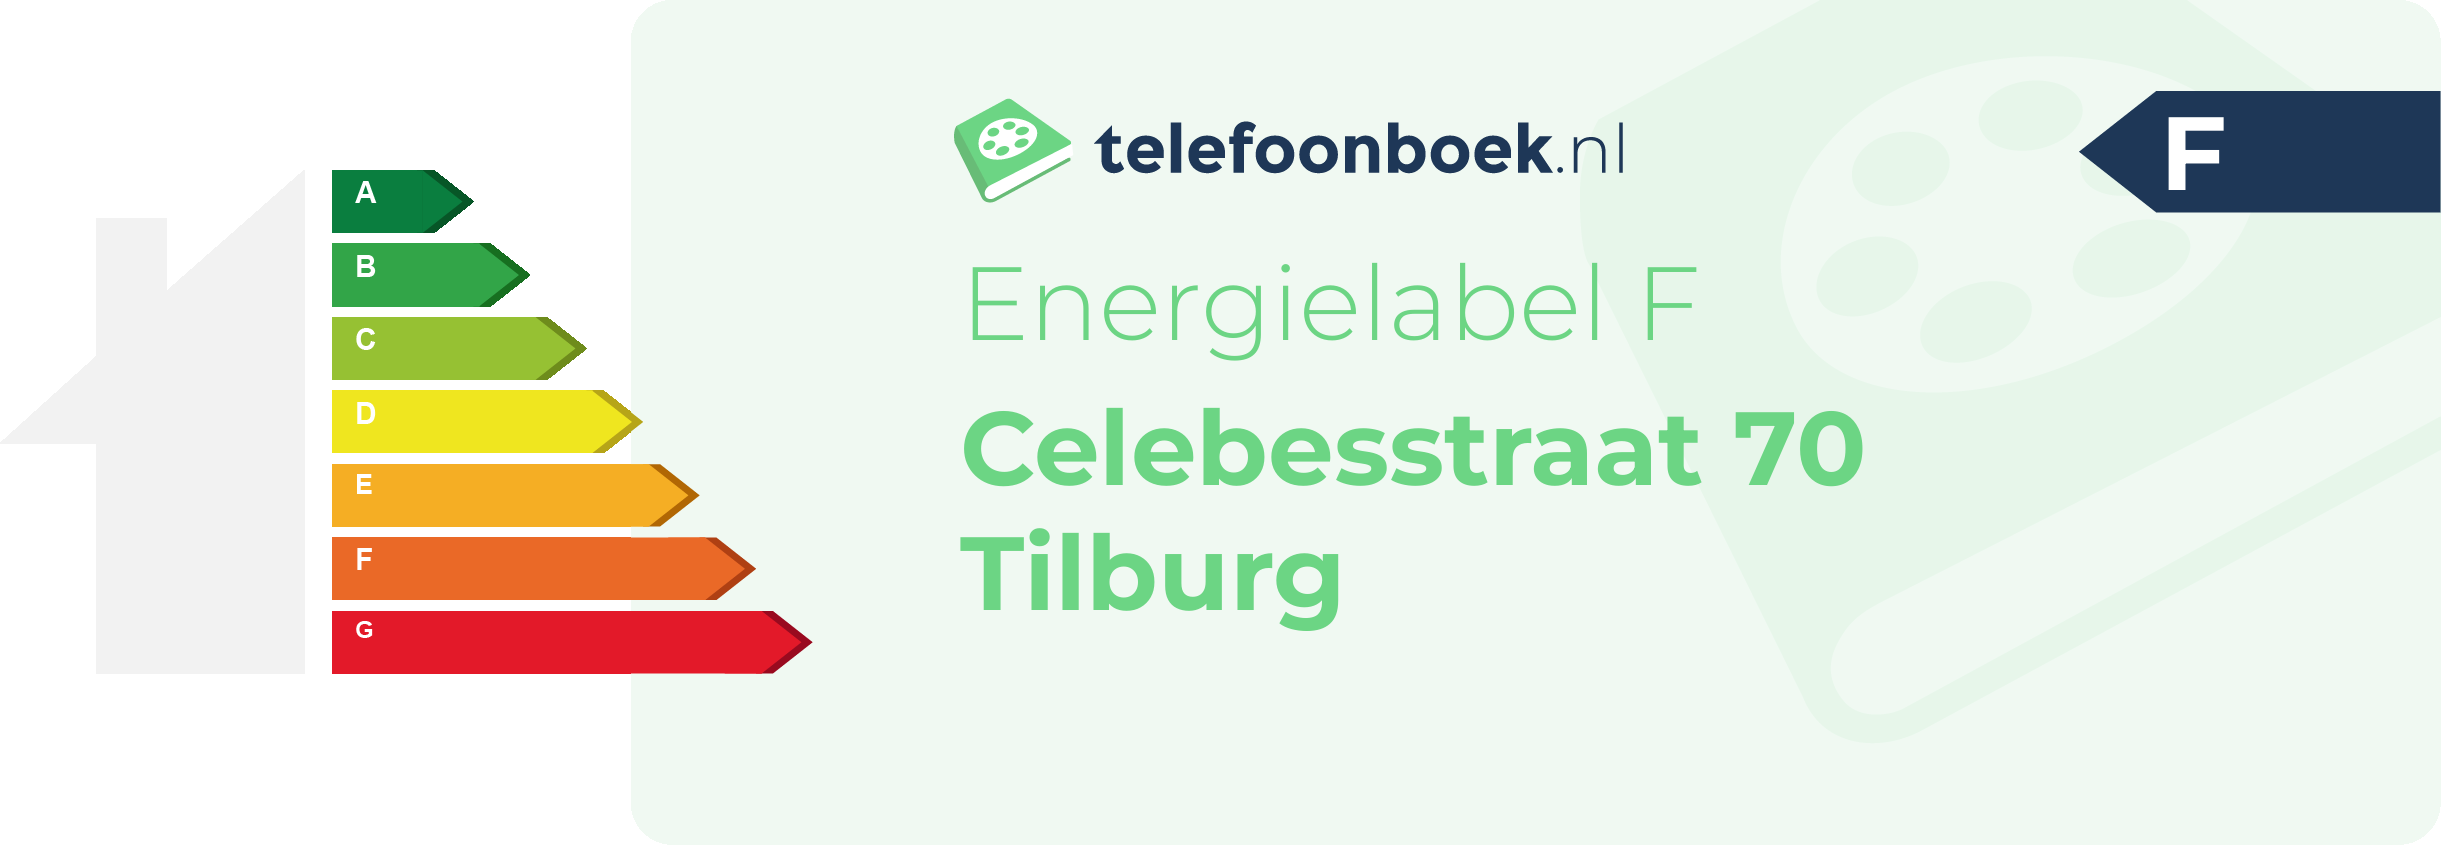 Energielabel Celebesstraat 70 Tilburg